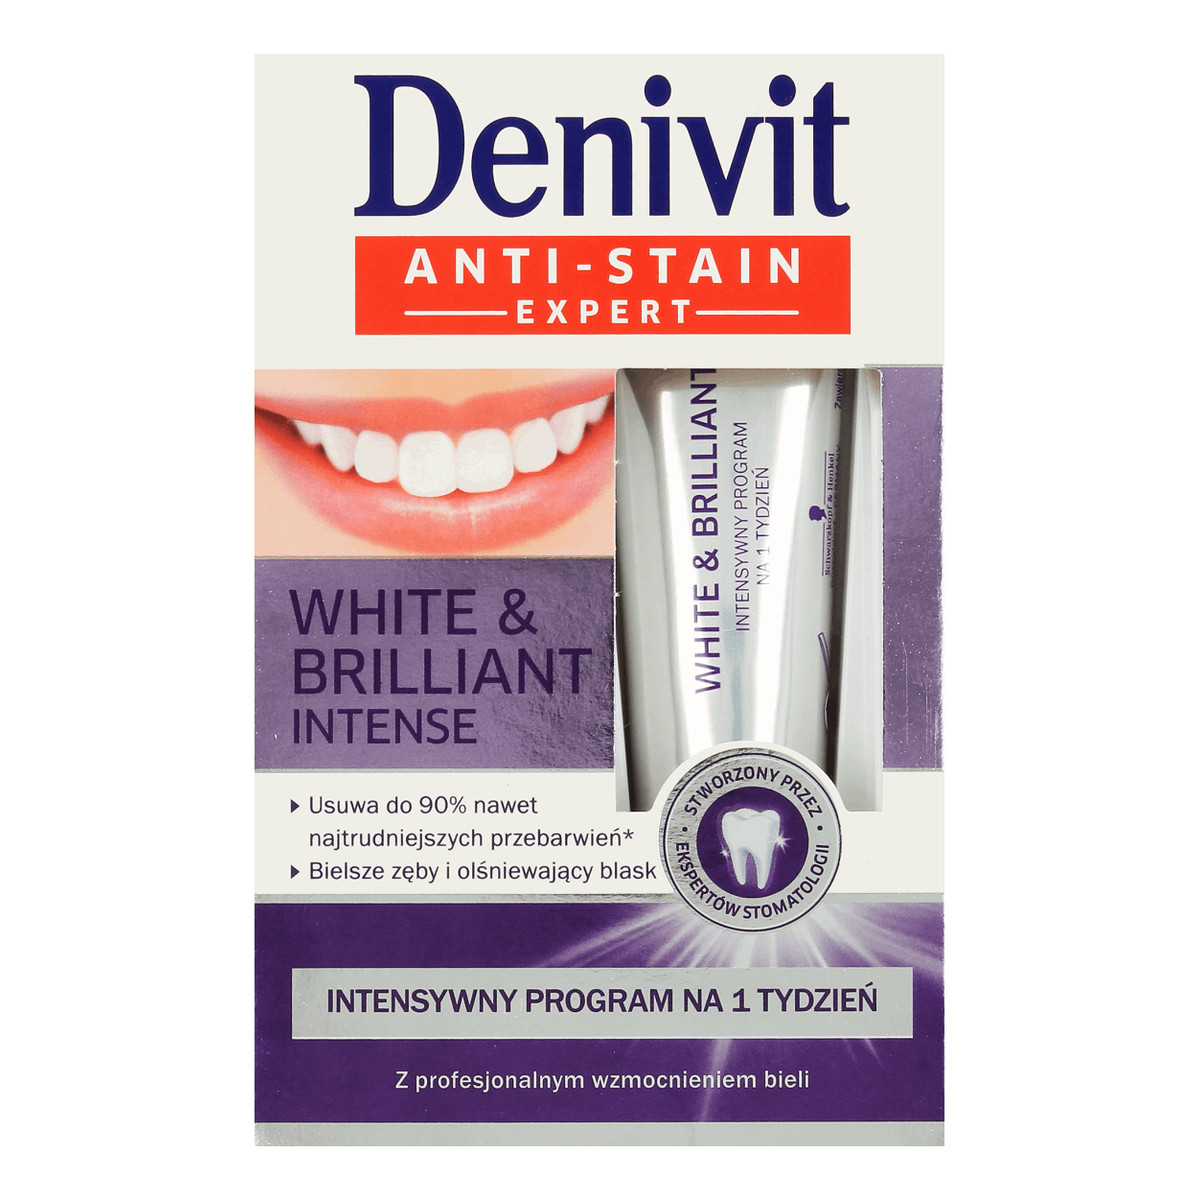 Denivit White & Brilliant Intense Anti Stain Expert Preparat Wybielający Zęby 20ml